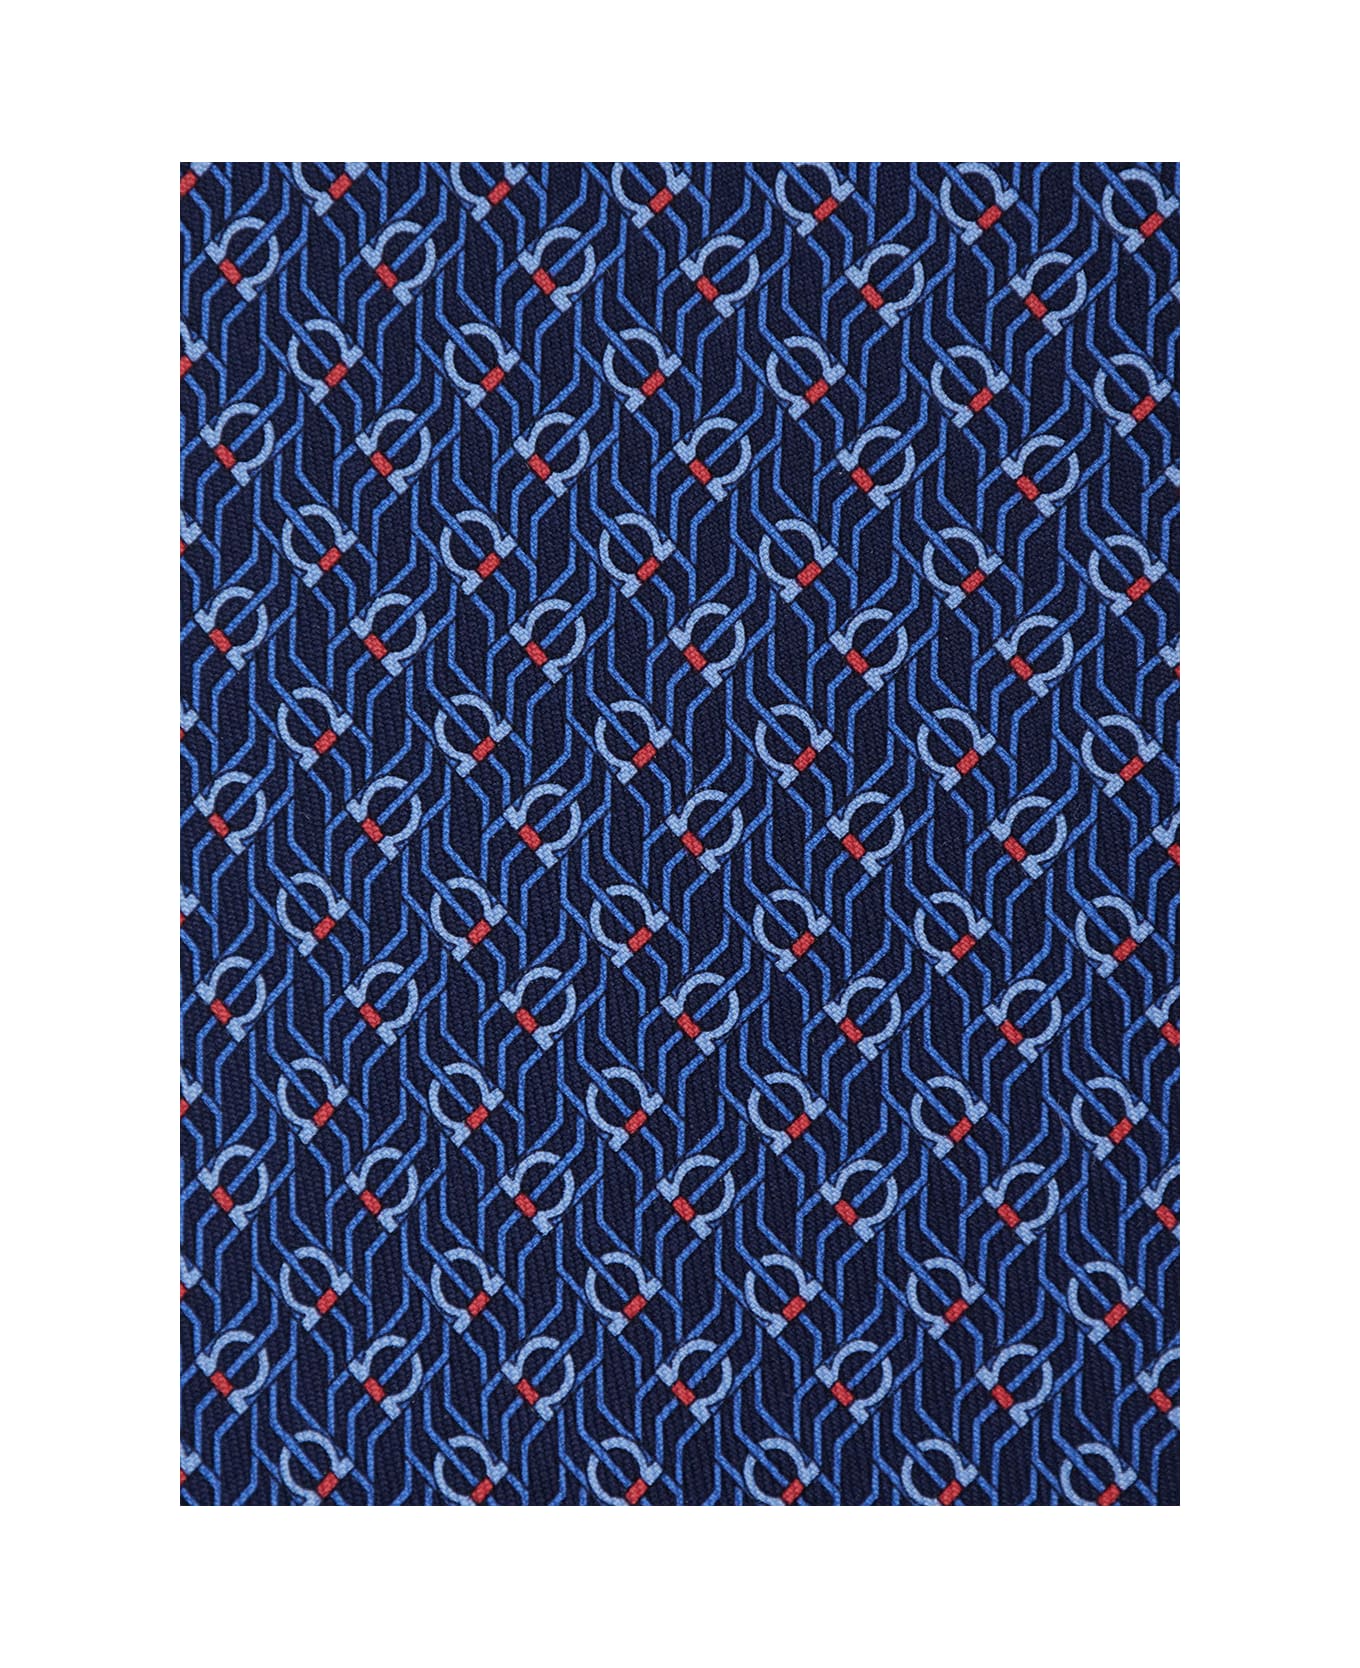 Ferragamo Blue Tie With Gancini Print In Silk Man - Blu